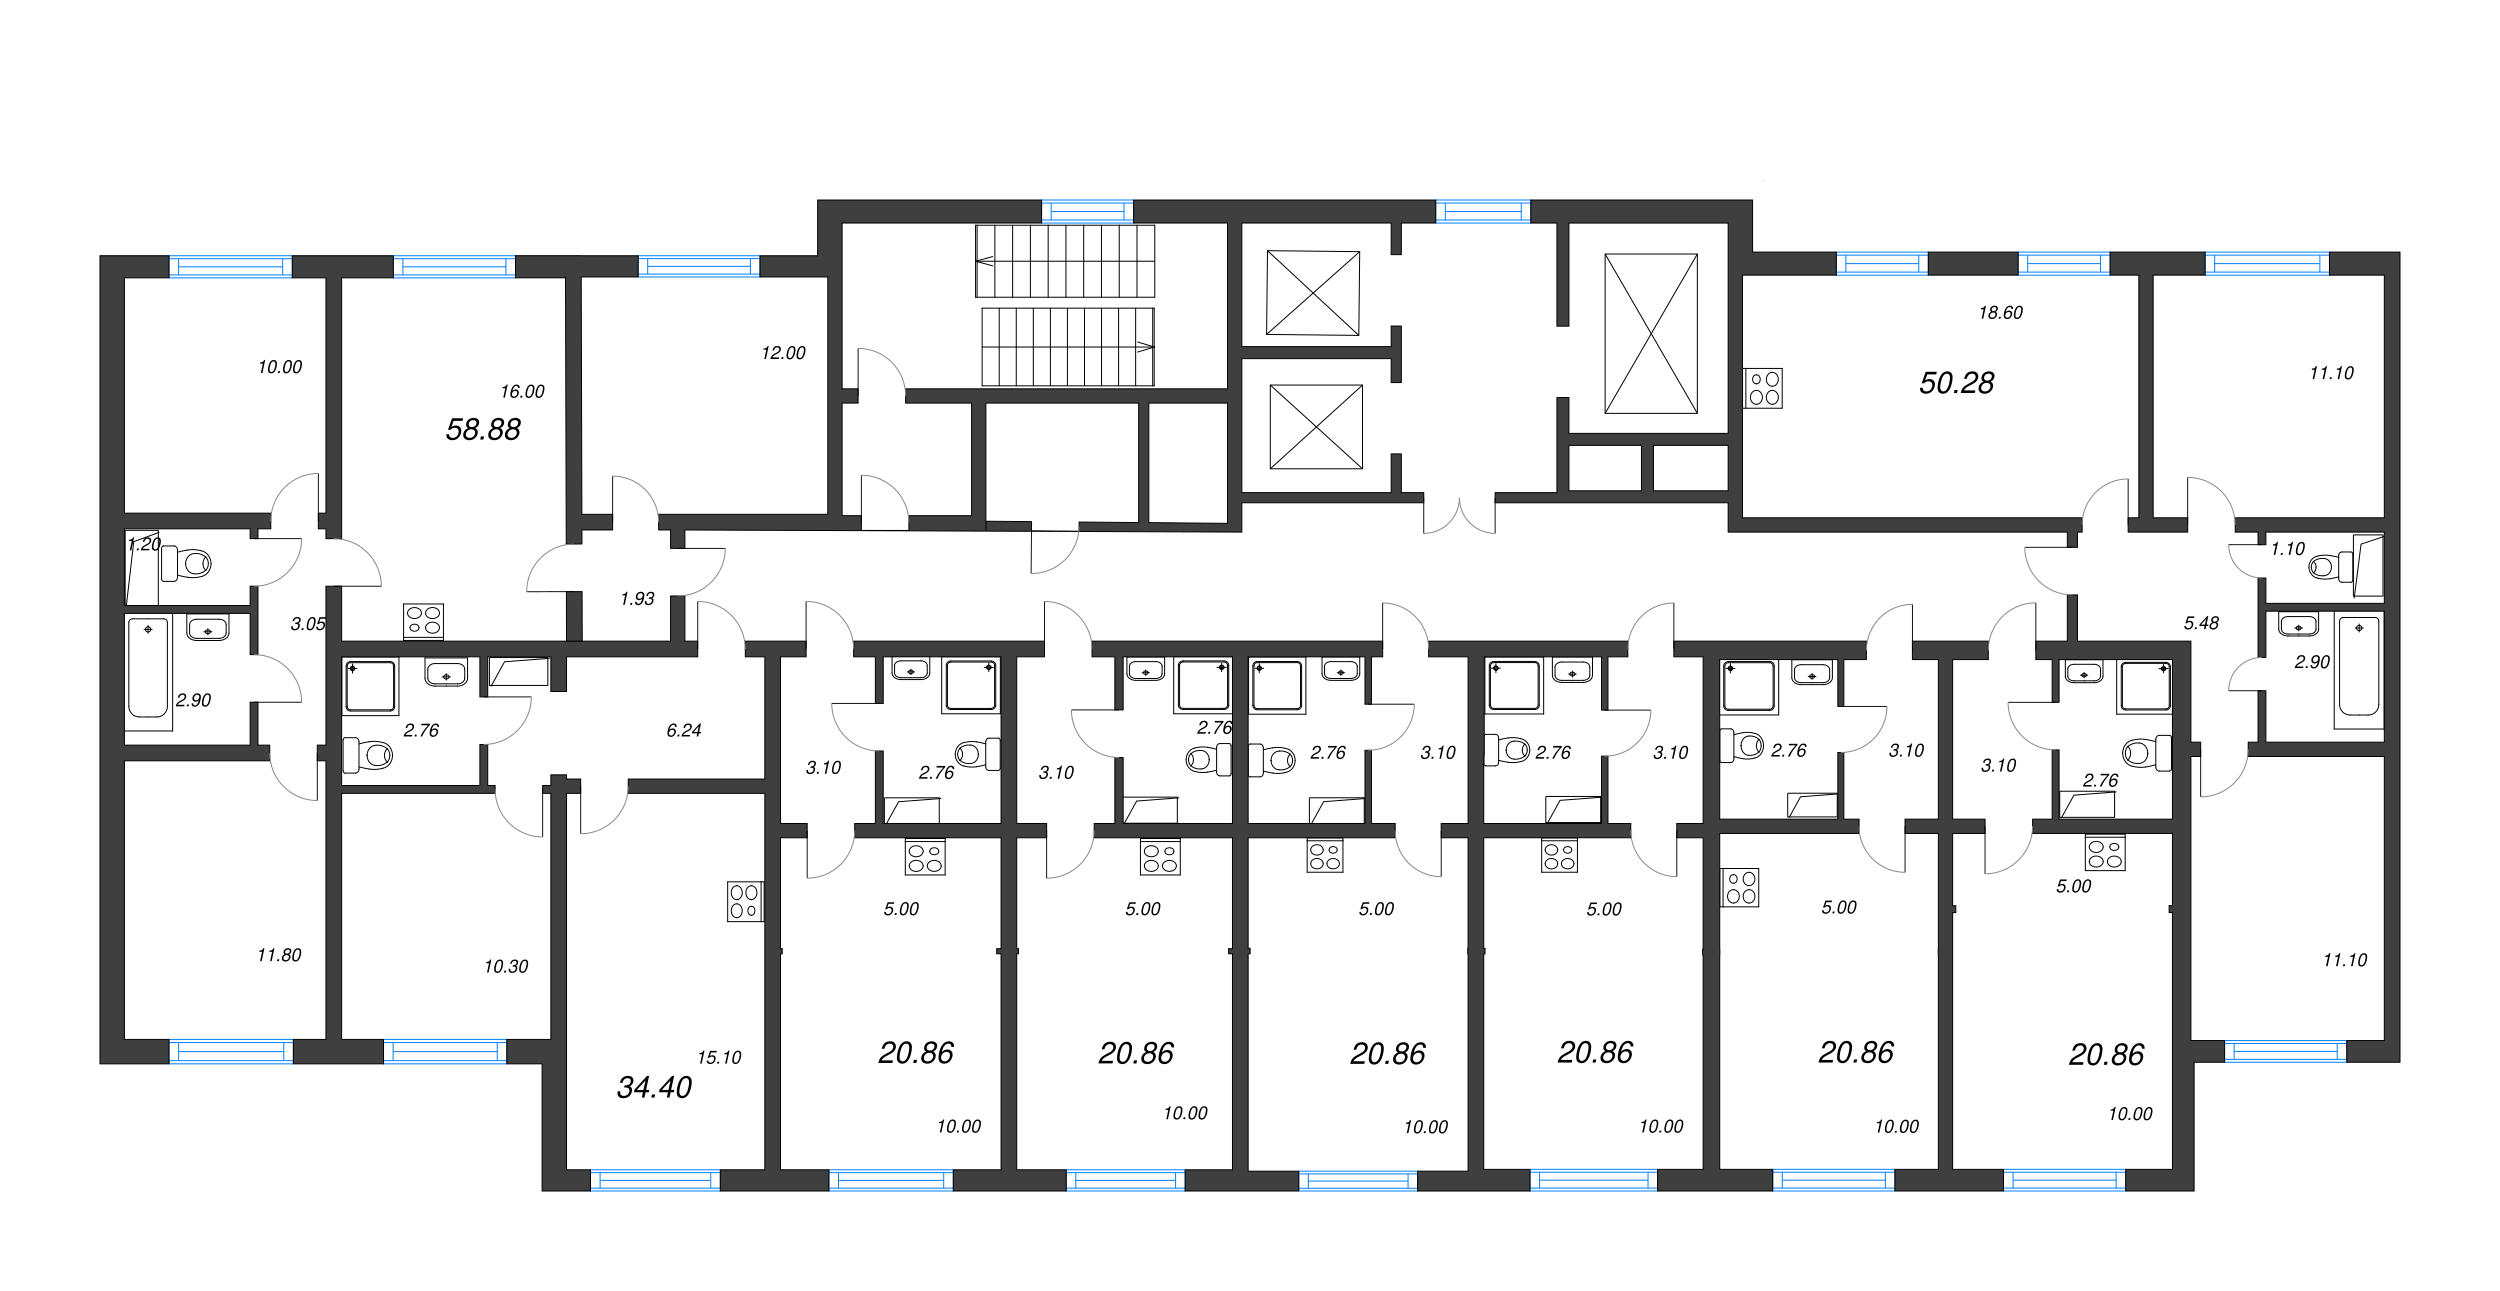 4-комнатная (Евро) квартира, 58.88 м² в ЖК "Ручьи" - планировка этажа